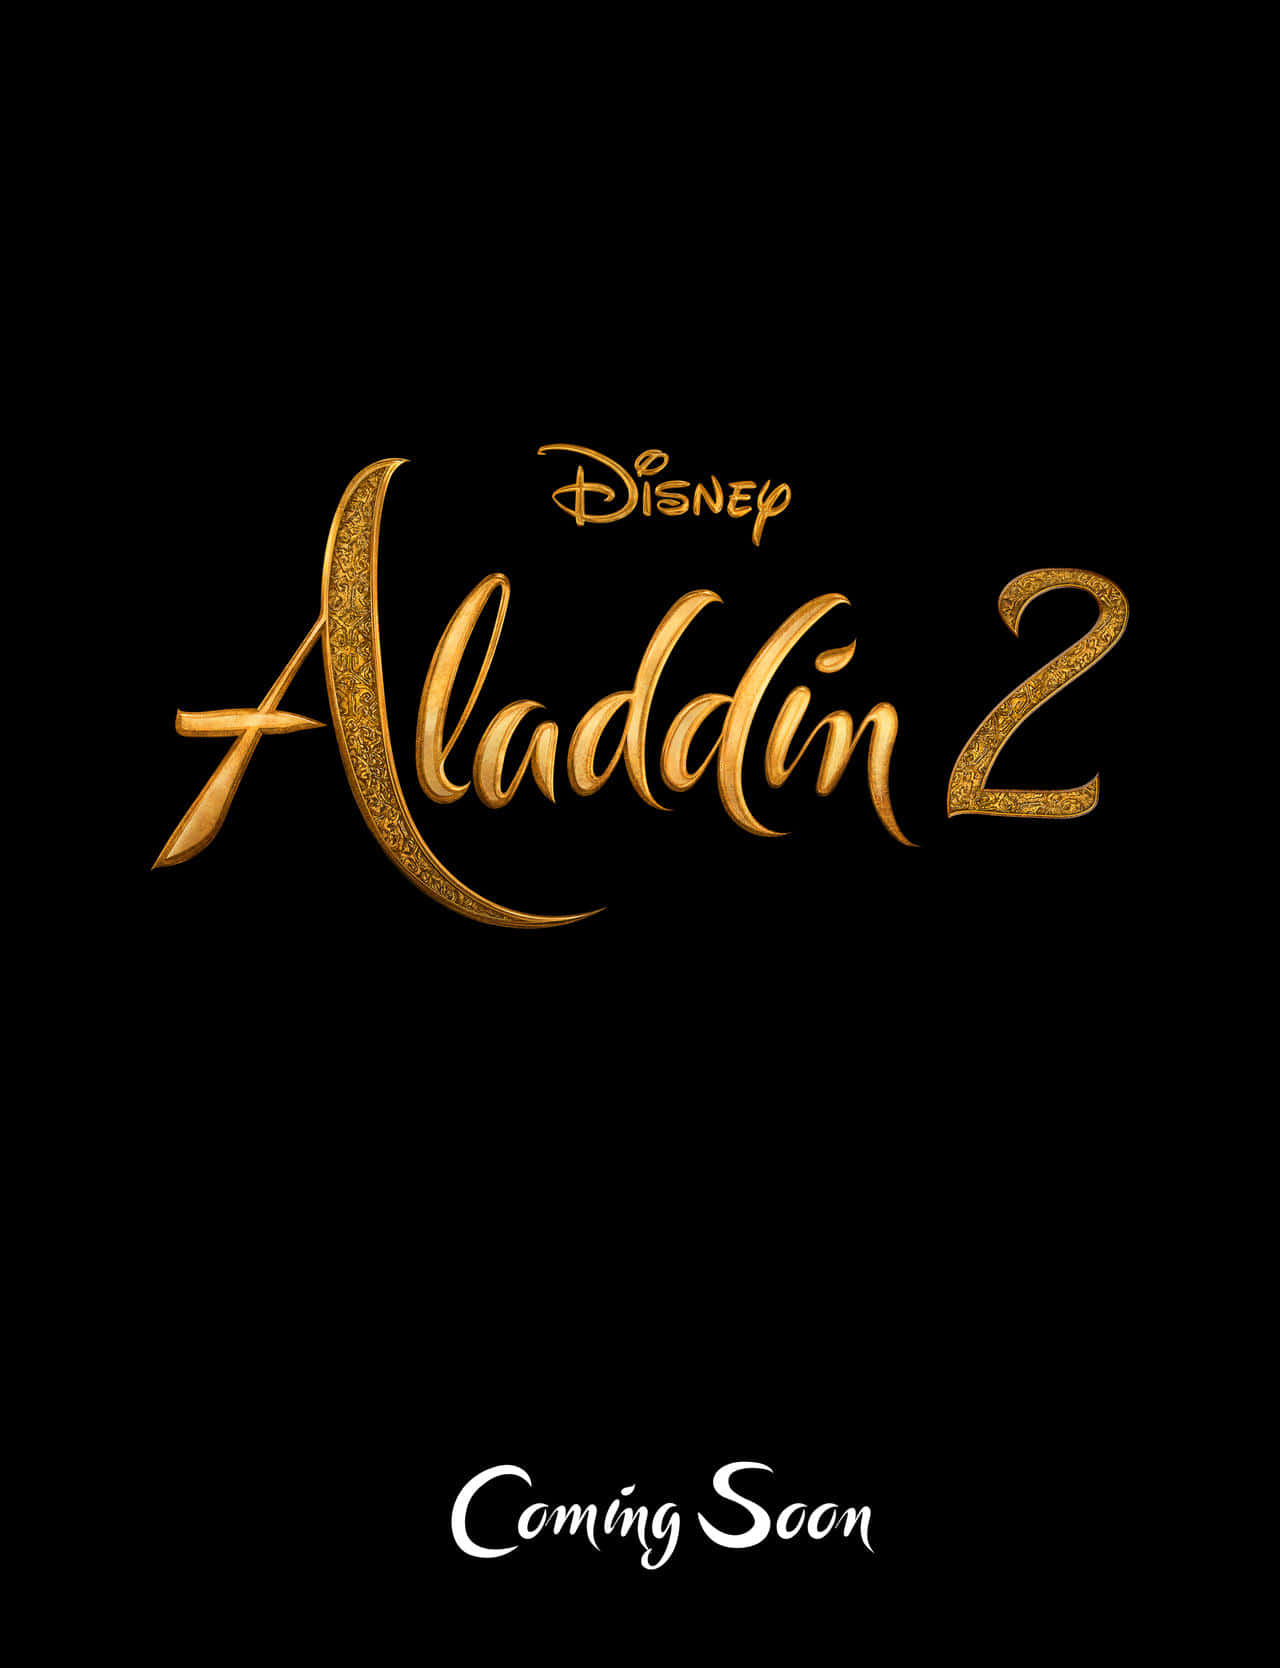 Aladdinwirft Einen Blick Auf Die Bezaubernde Prinzessin Jasmin